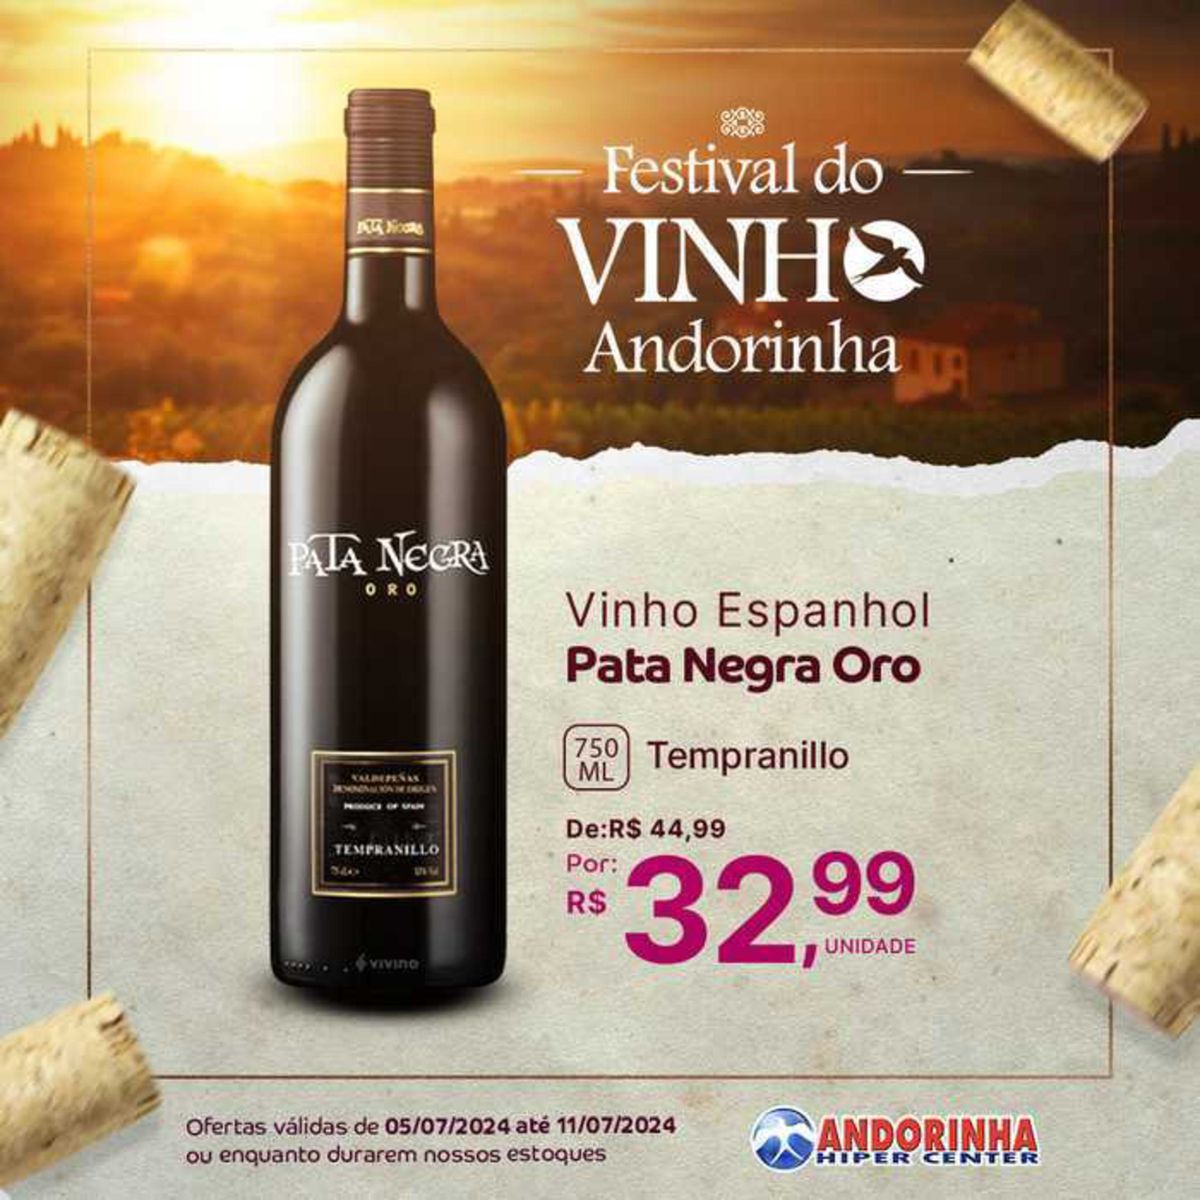 Vinho Espanhol Pata Negra Oro 750ml em promoção